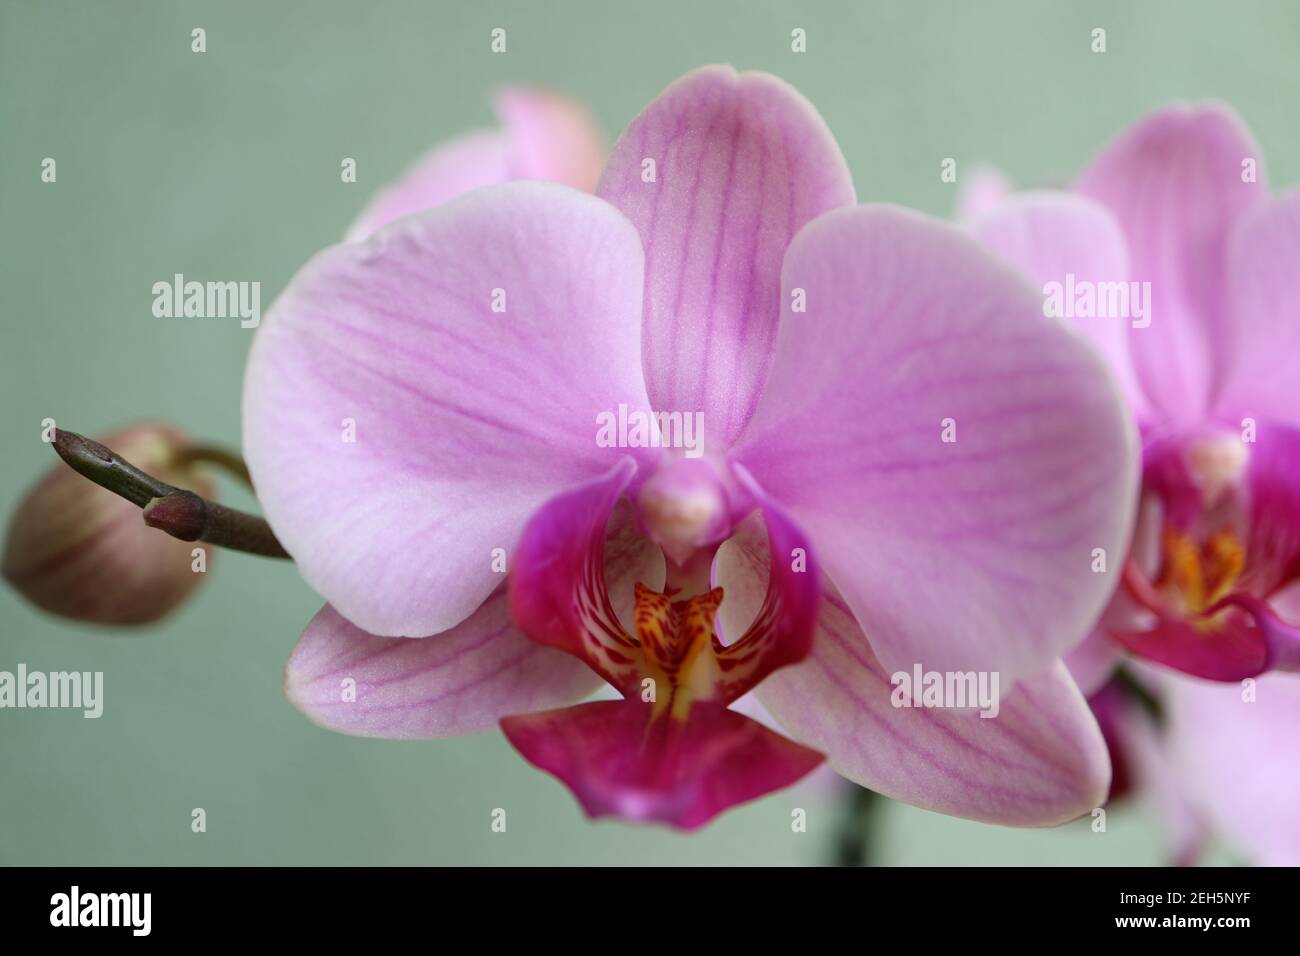 Orquídea rosa con pétalos delicados, brotes y patrones, orquídea rosa macro, cabeza de flor, belleza en la naturaleza, flor exótica, fotografía macro, imagen de stock Foto de stock